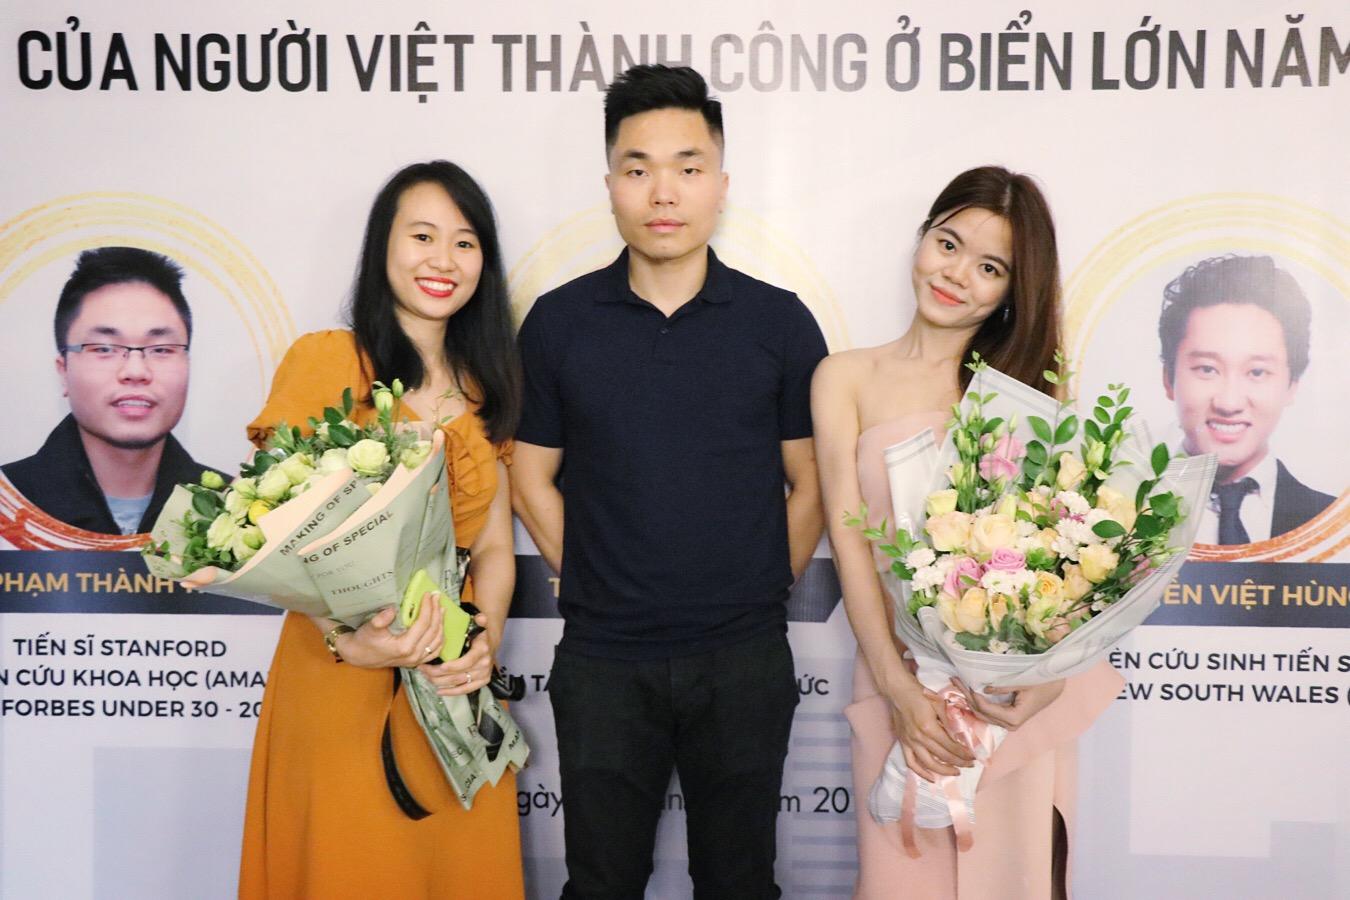 Tiến sĩ Phạm Thành Thái tại một sự kiện ở Hà Nội (09/2019)